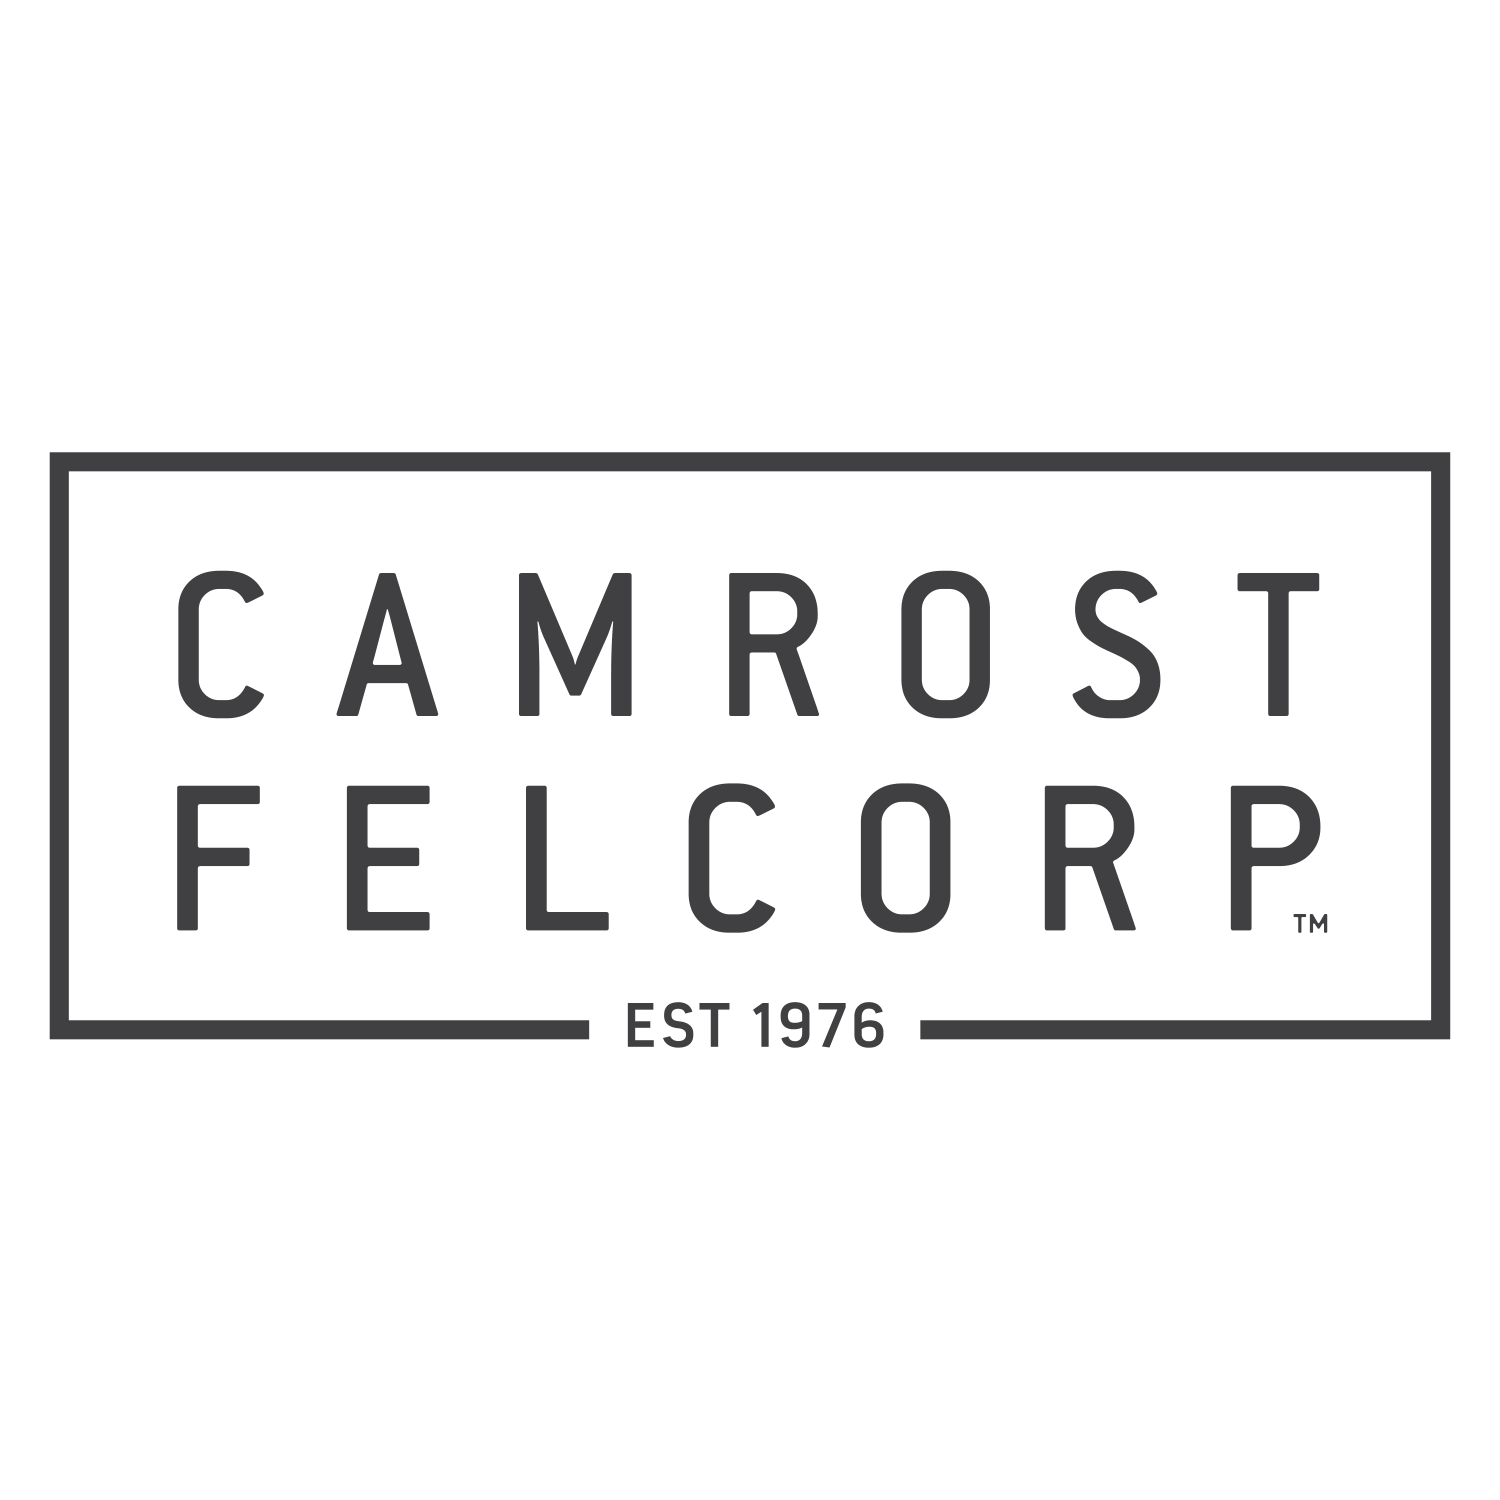 Camrost Felcorp Inc.